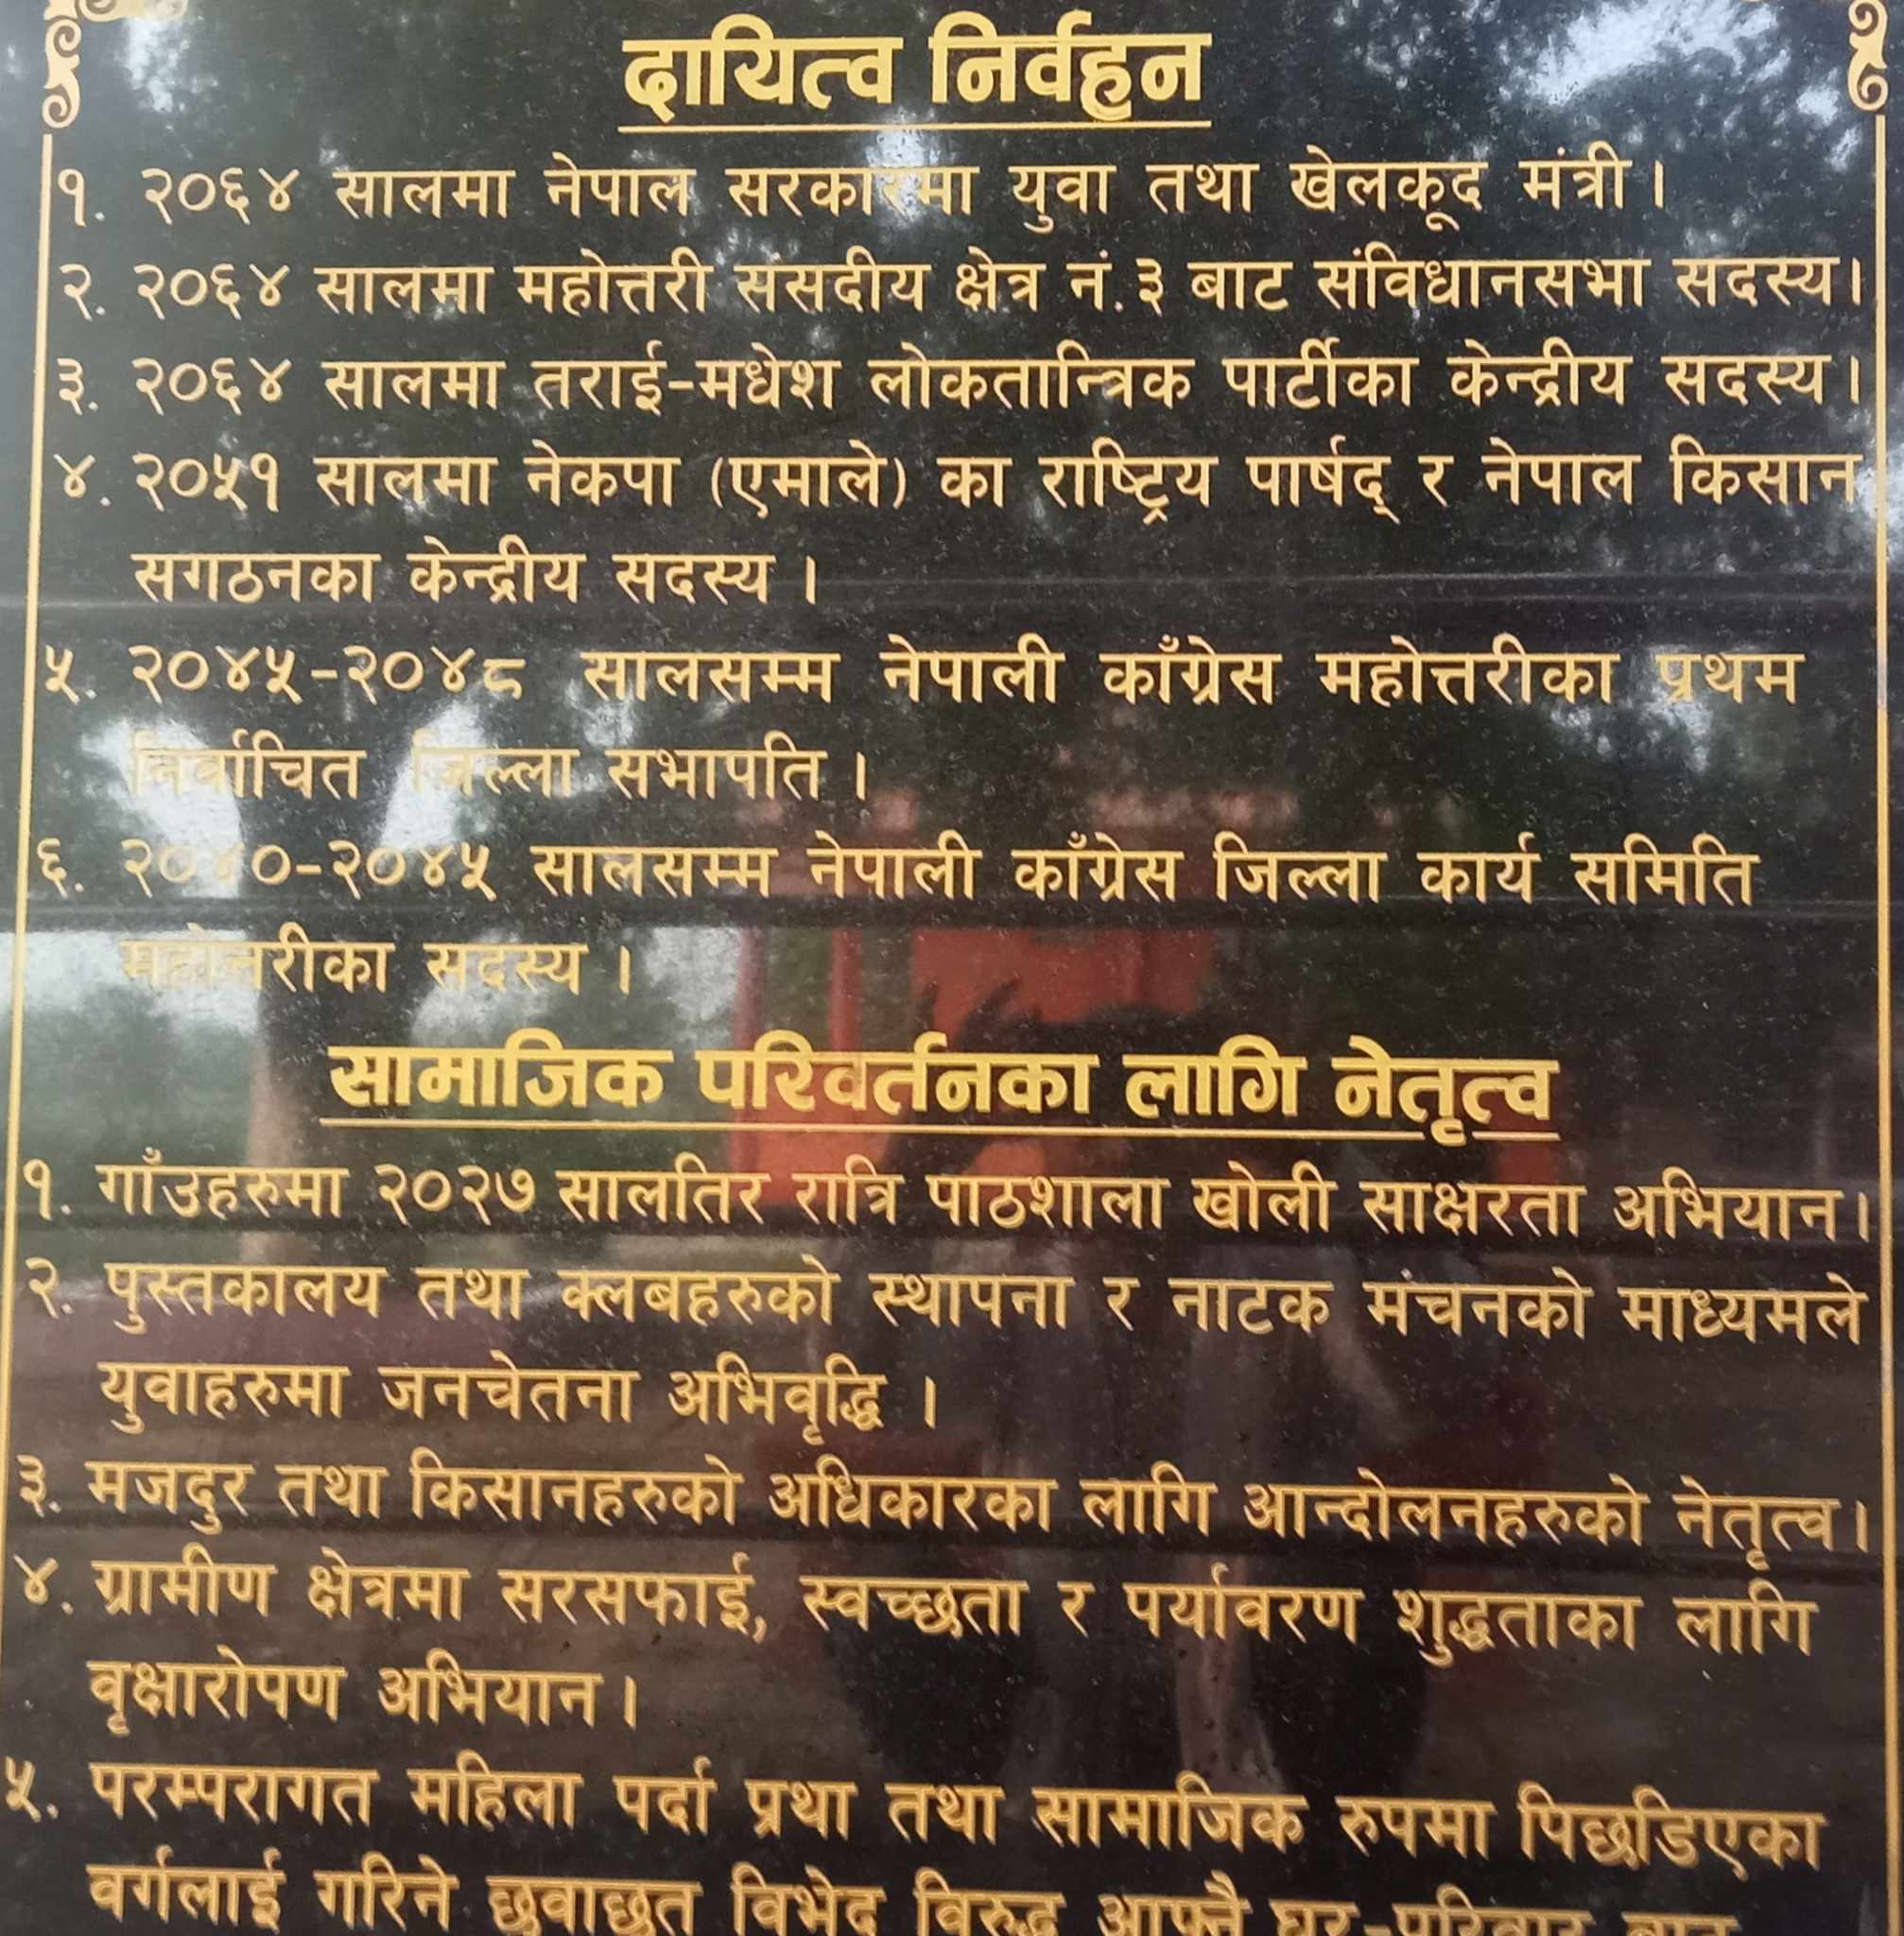 Shalik Muni Sametieko Ganesh Nepali Ko Parichay-31690345924.jpg